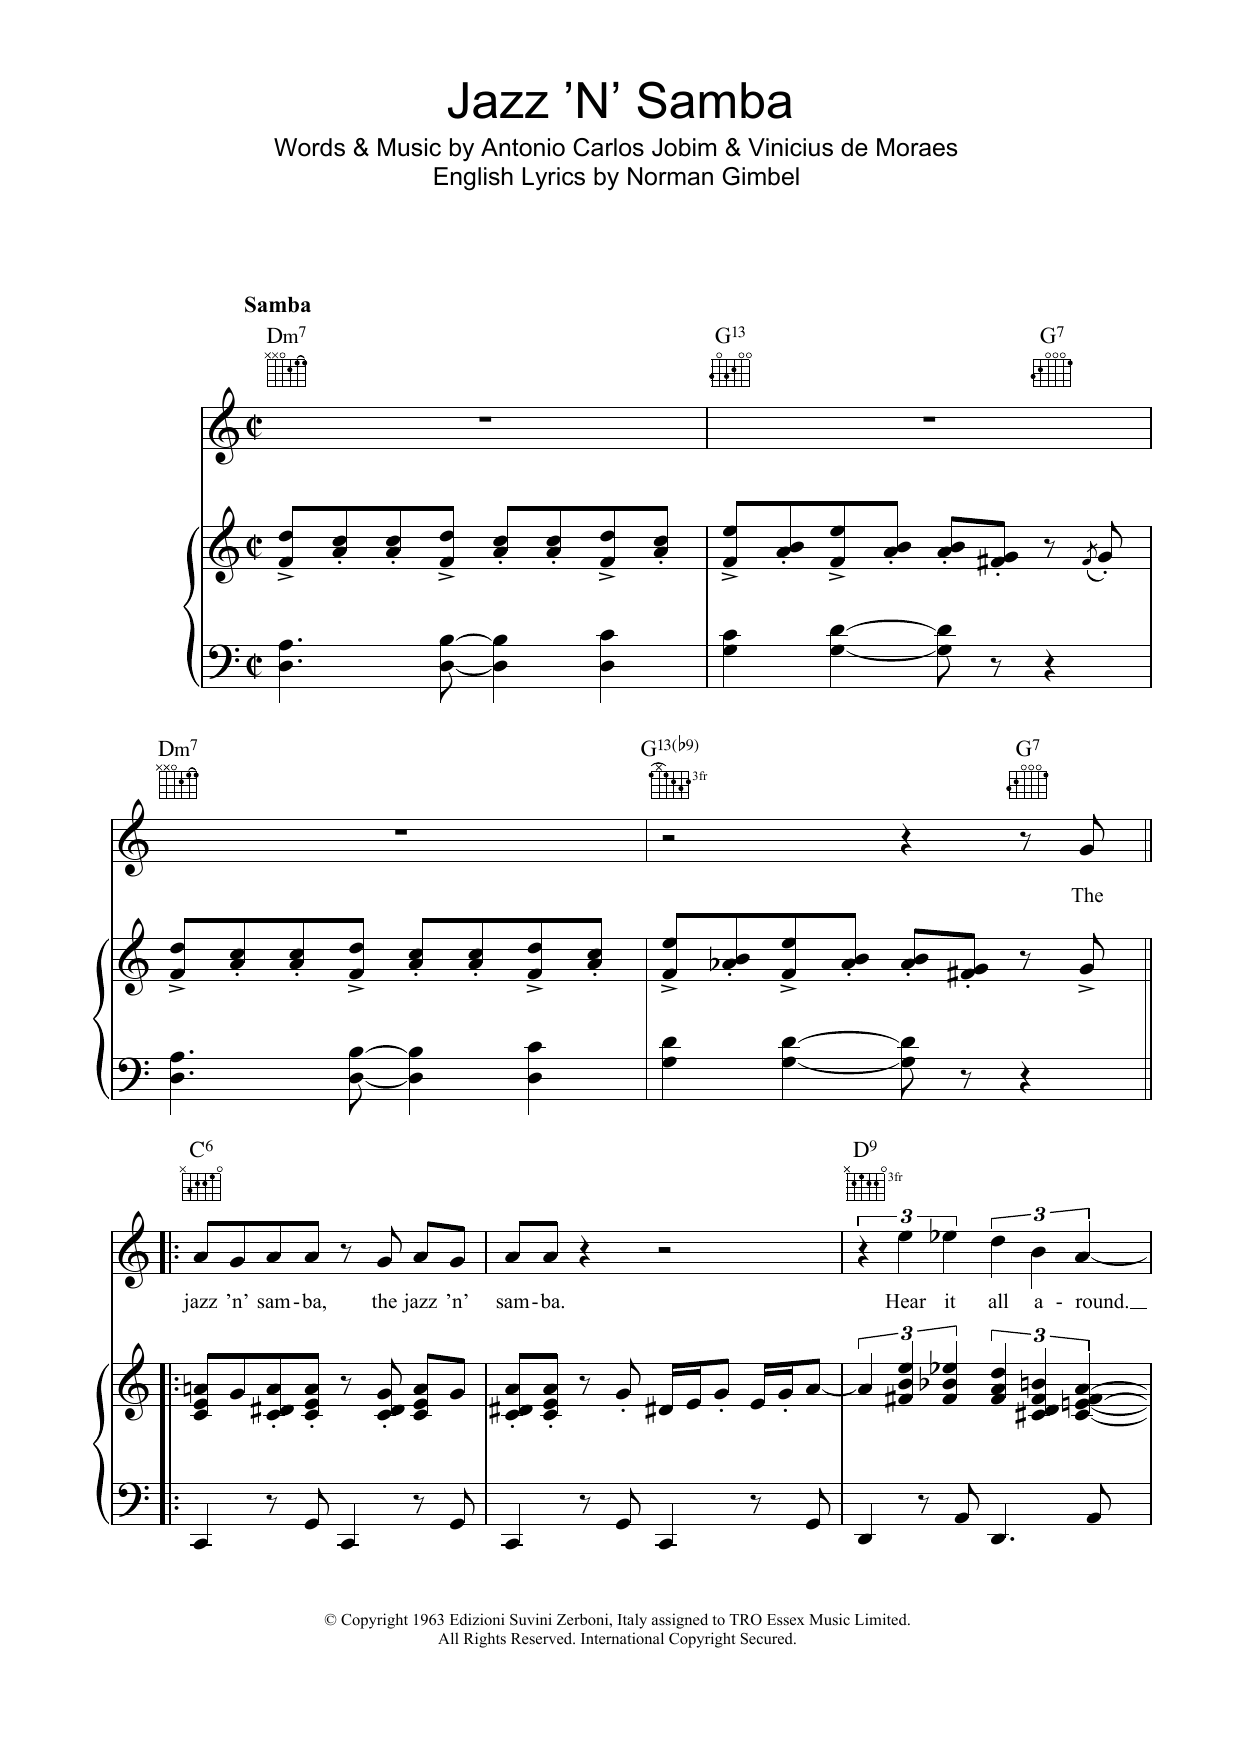 Antonio Carlos Jobim Jazz 'N' Samba (So Danco Samba) Sheet Music Notes & Chords for Piano, Vocal & Guitar (Right-Hand Melody) - Download or Print PDF